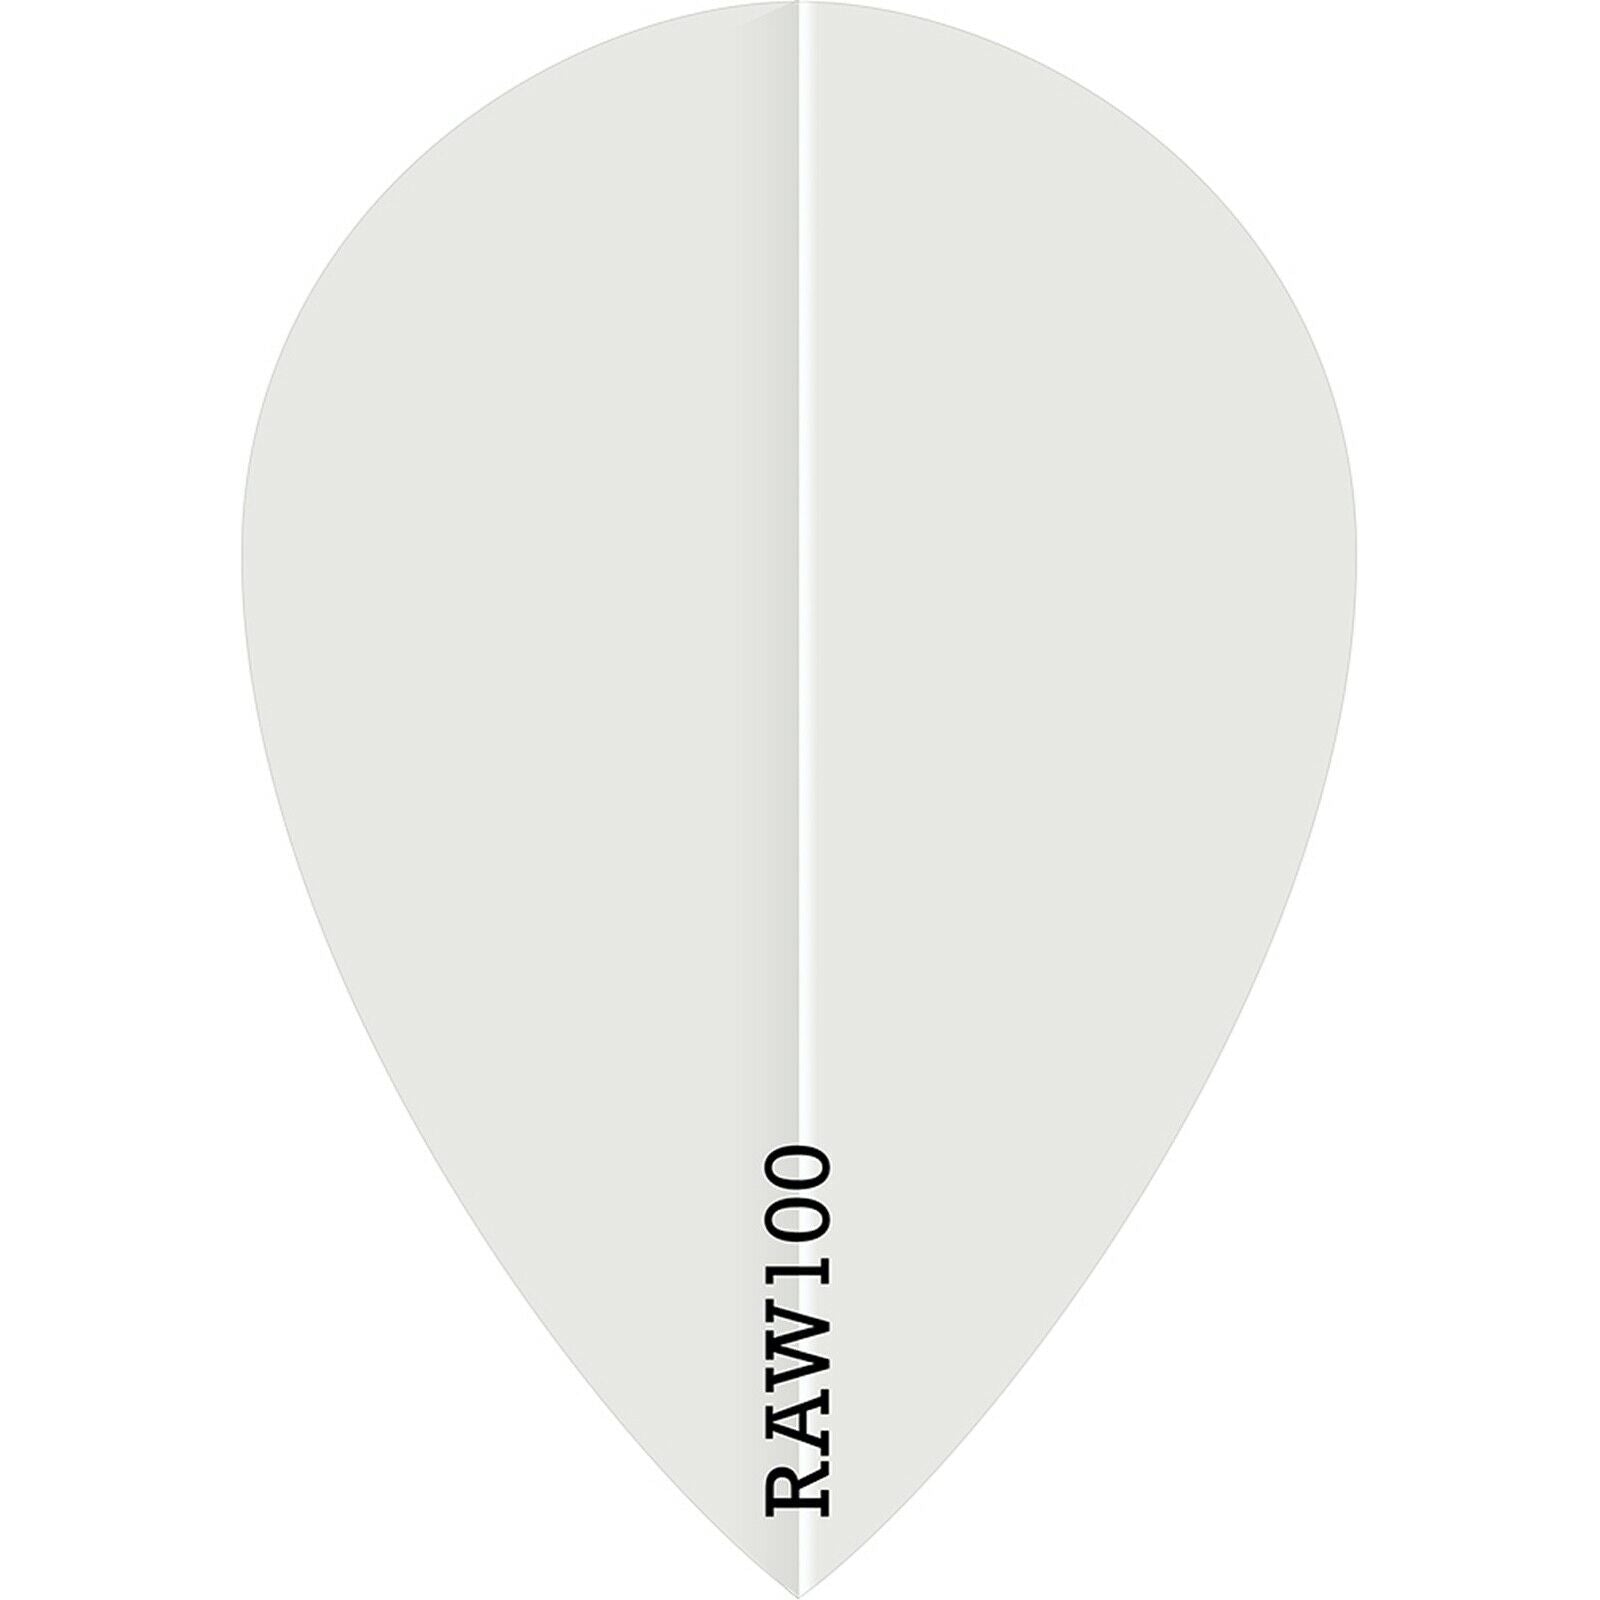 Raw 100 Plain Flights - Pear - 100 micron - White